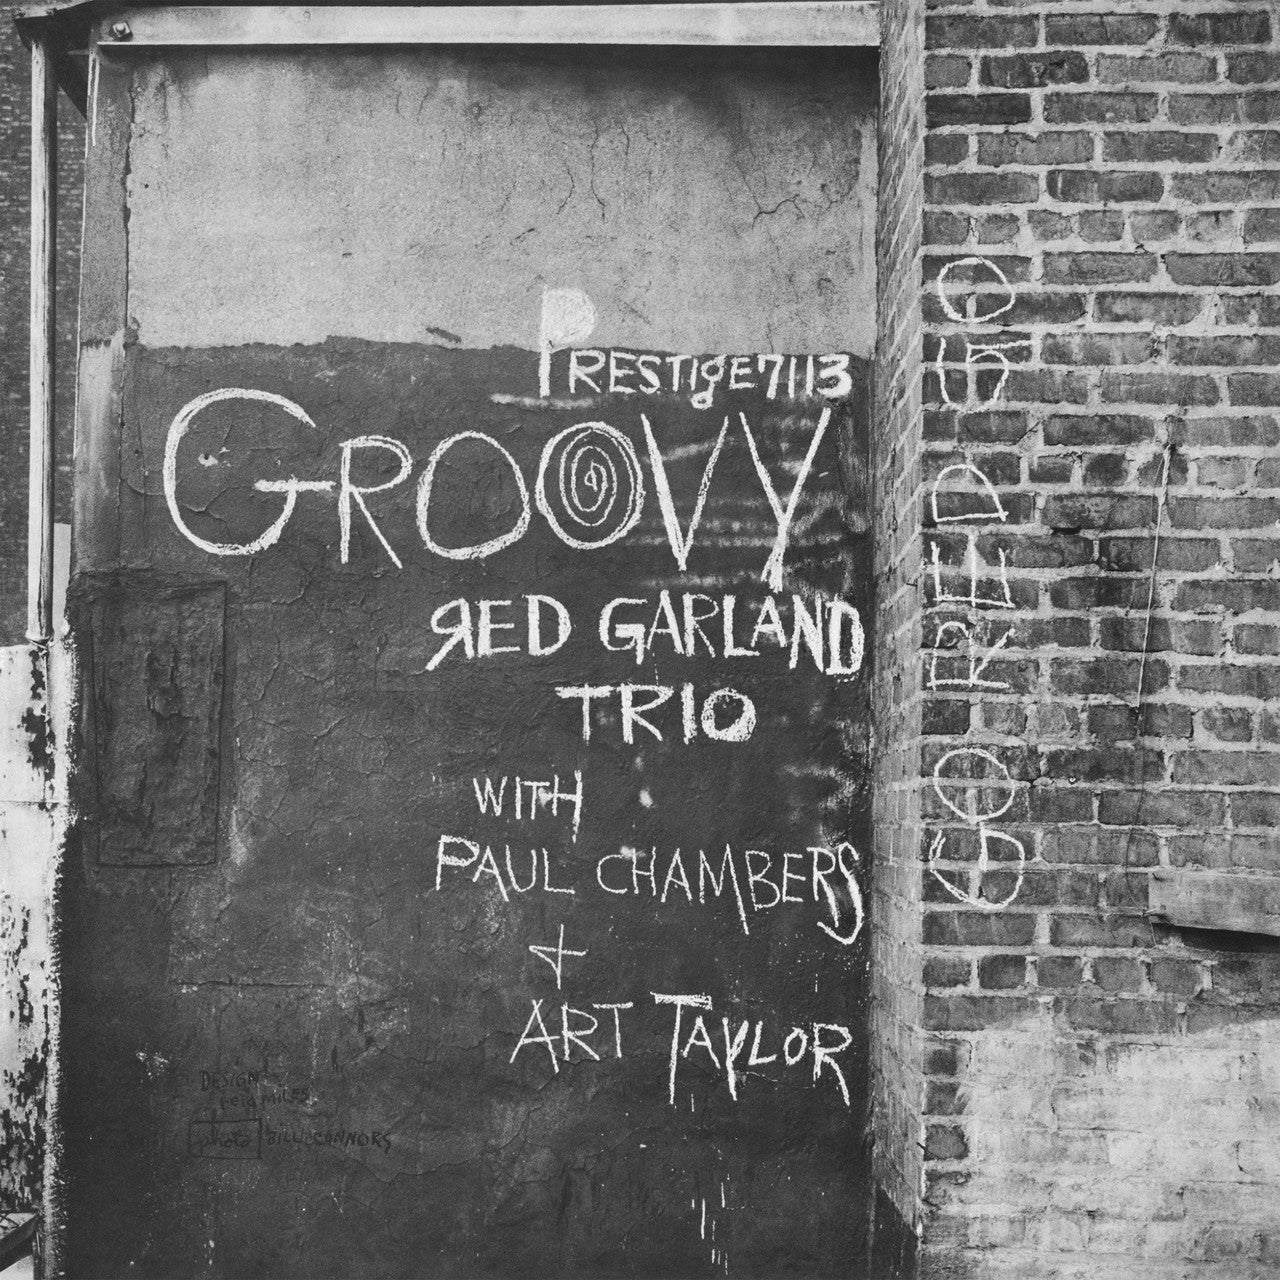 Red Garland Trio - Groovy - OJC LP